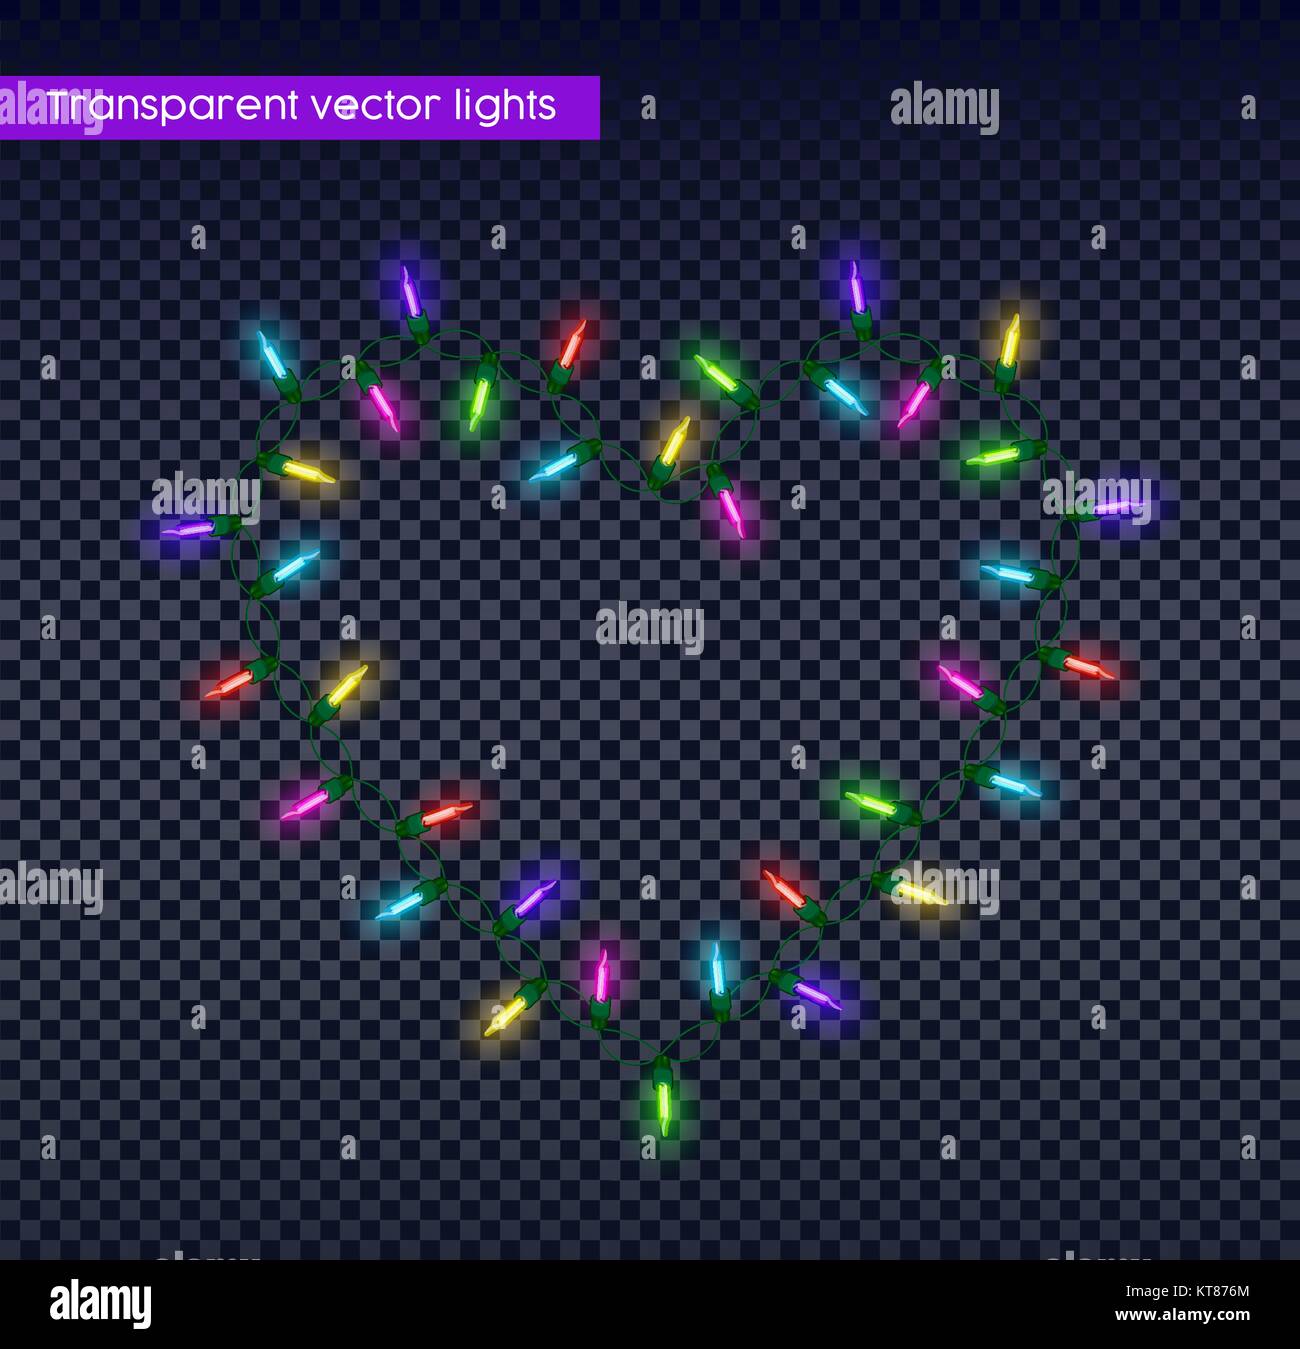 Les lumières de Noël sur fond transparent en forme de coeur, de lumière réalistes garland pour faciliter la conception. Vecteur EPS10. Illustration de Vecteur